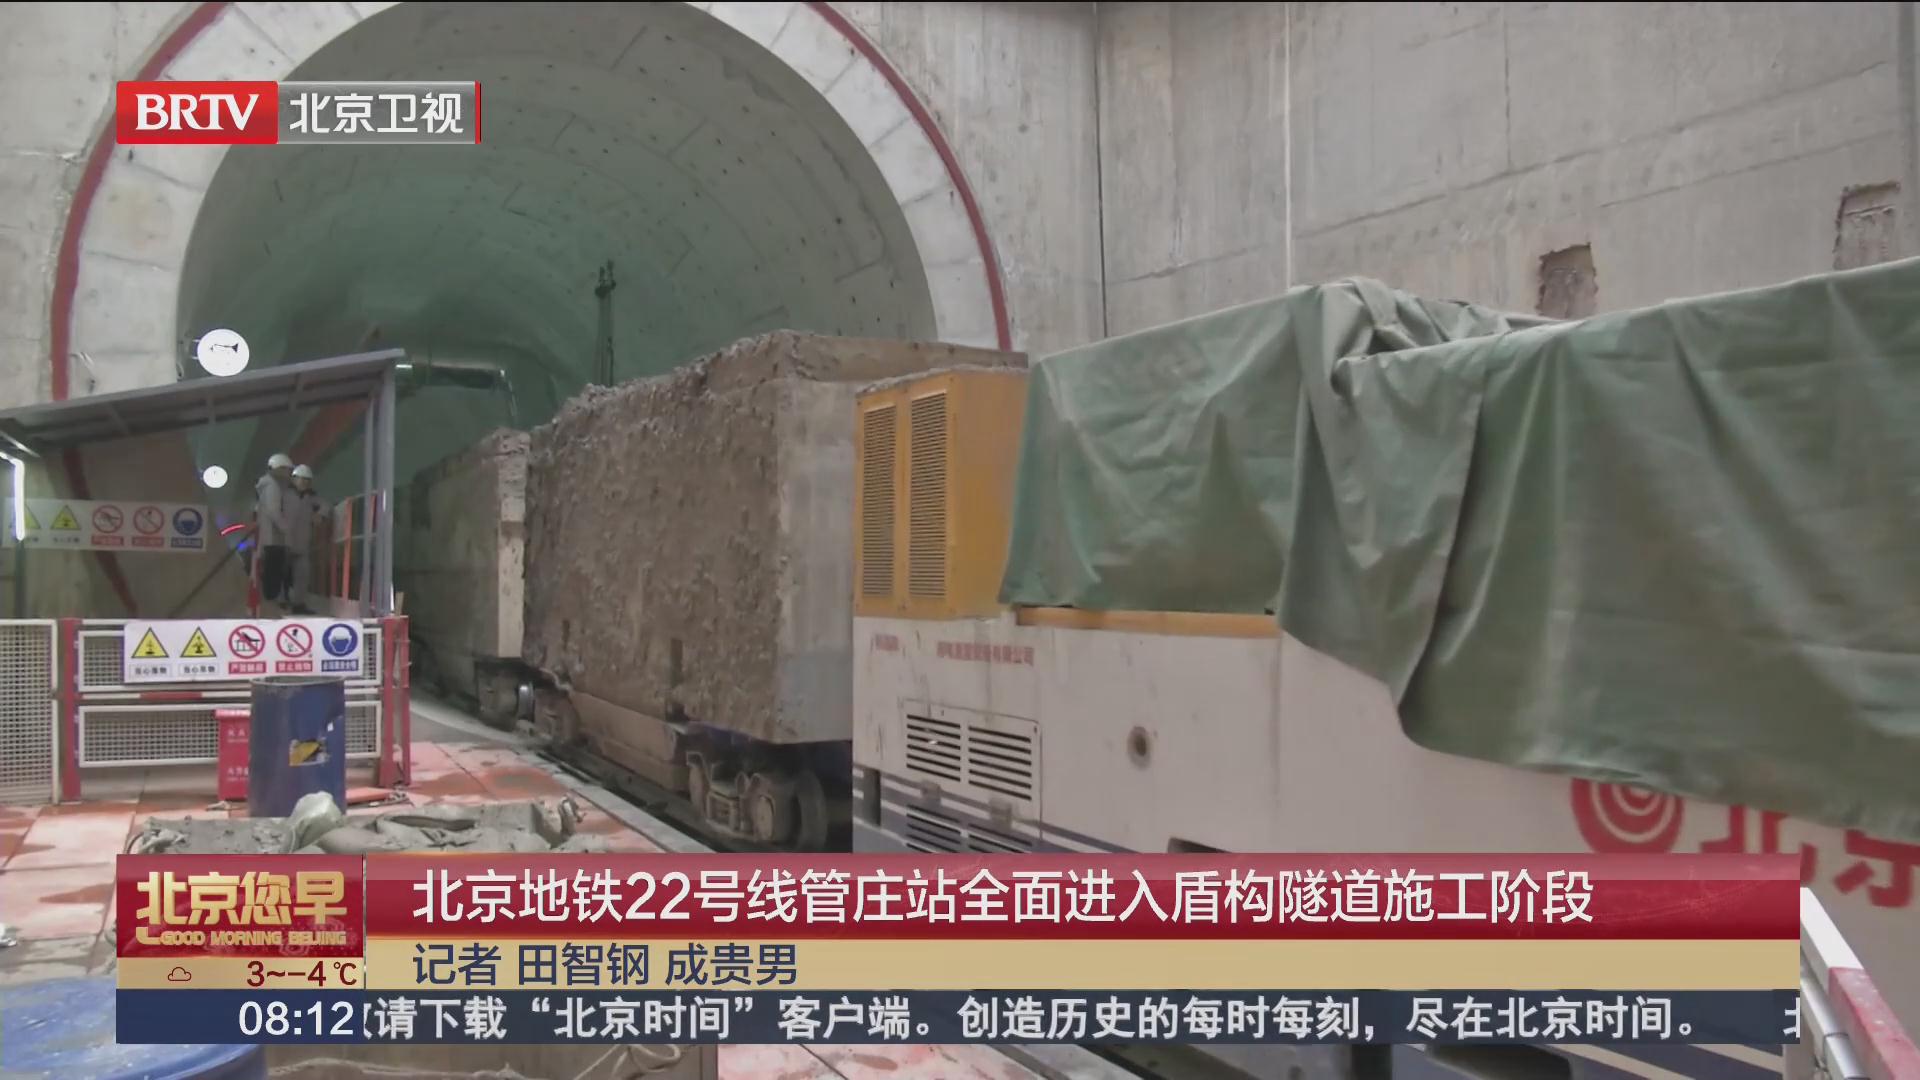 BTV 《北京您早》—北京地铁22号线管庄站全面进入盾构隧道施工阶段